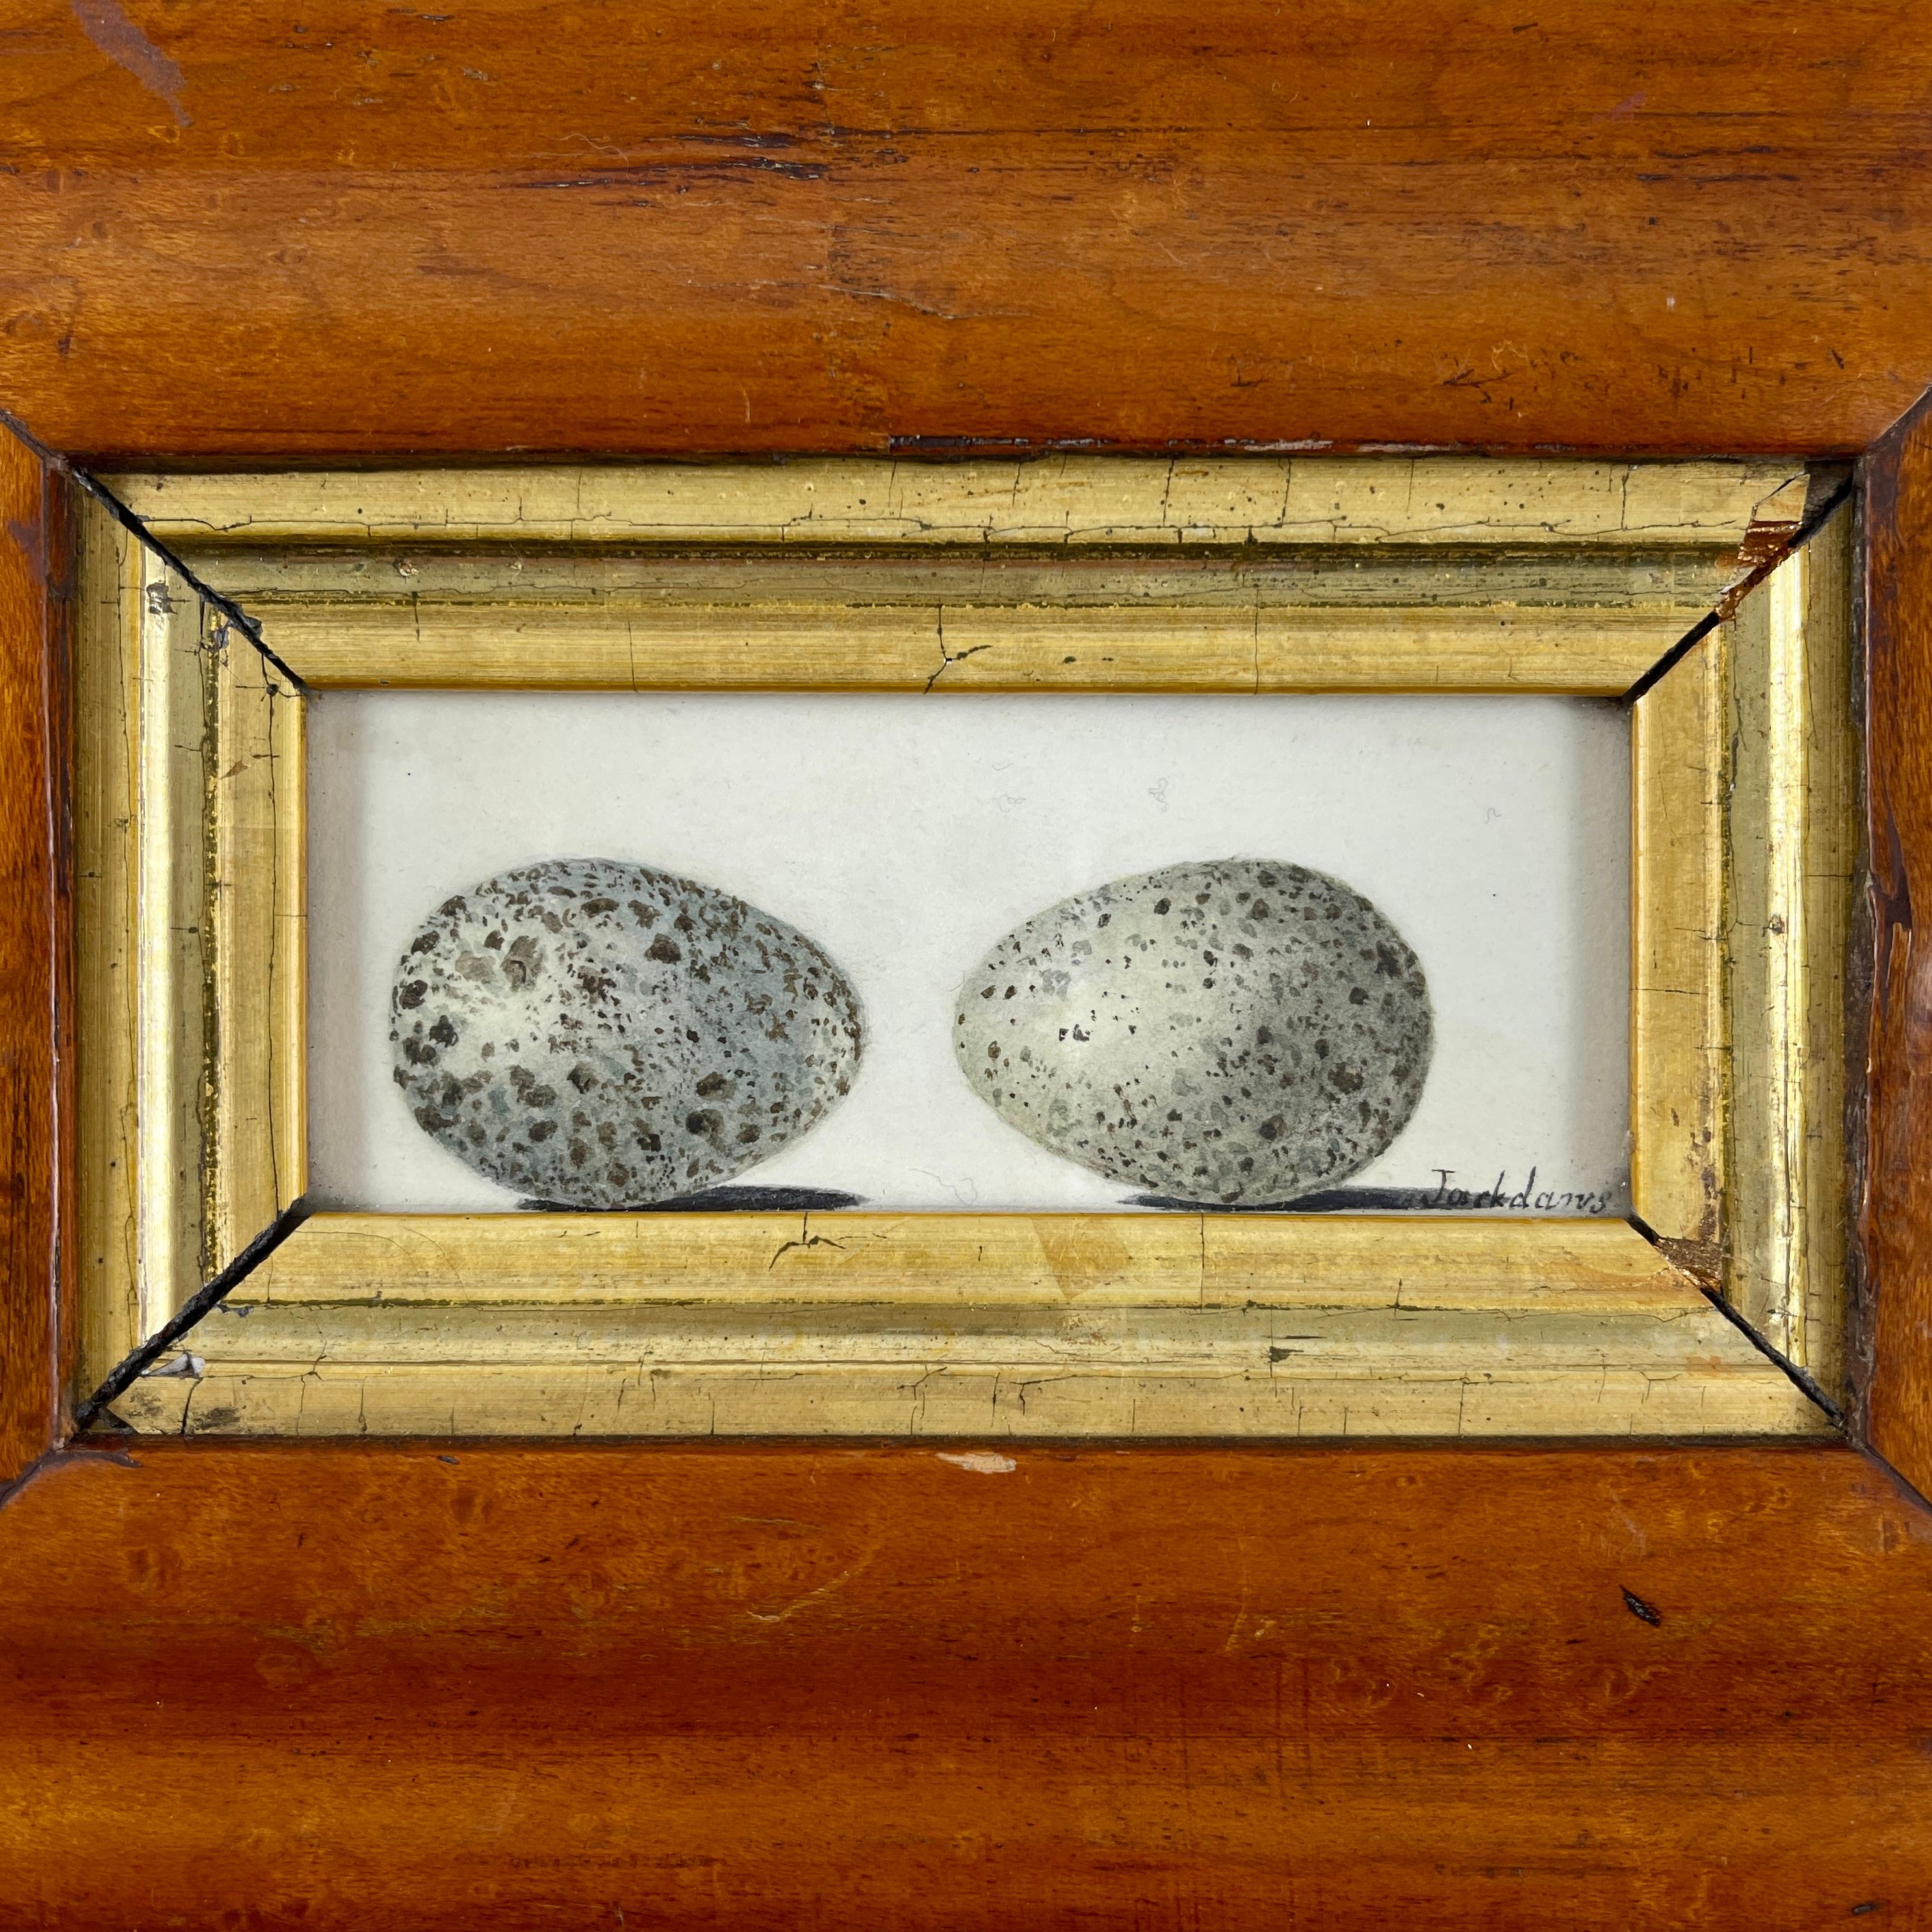 Ein Original-Aquarell der Britischen Schule aus der Regency-Periode, das zwei Vogeleier zeigt und in einen Rahmen aus Vogelaugenahorn aus der georgischen Periode eingefasst ist - um 1835.

Diese Aquarelle wurden hauptsächlich von jungen Mädchen